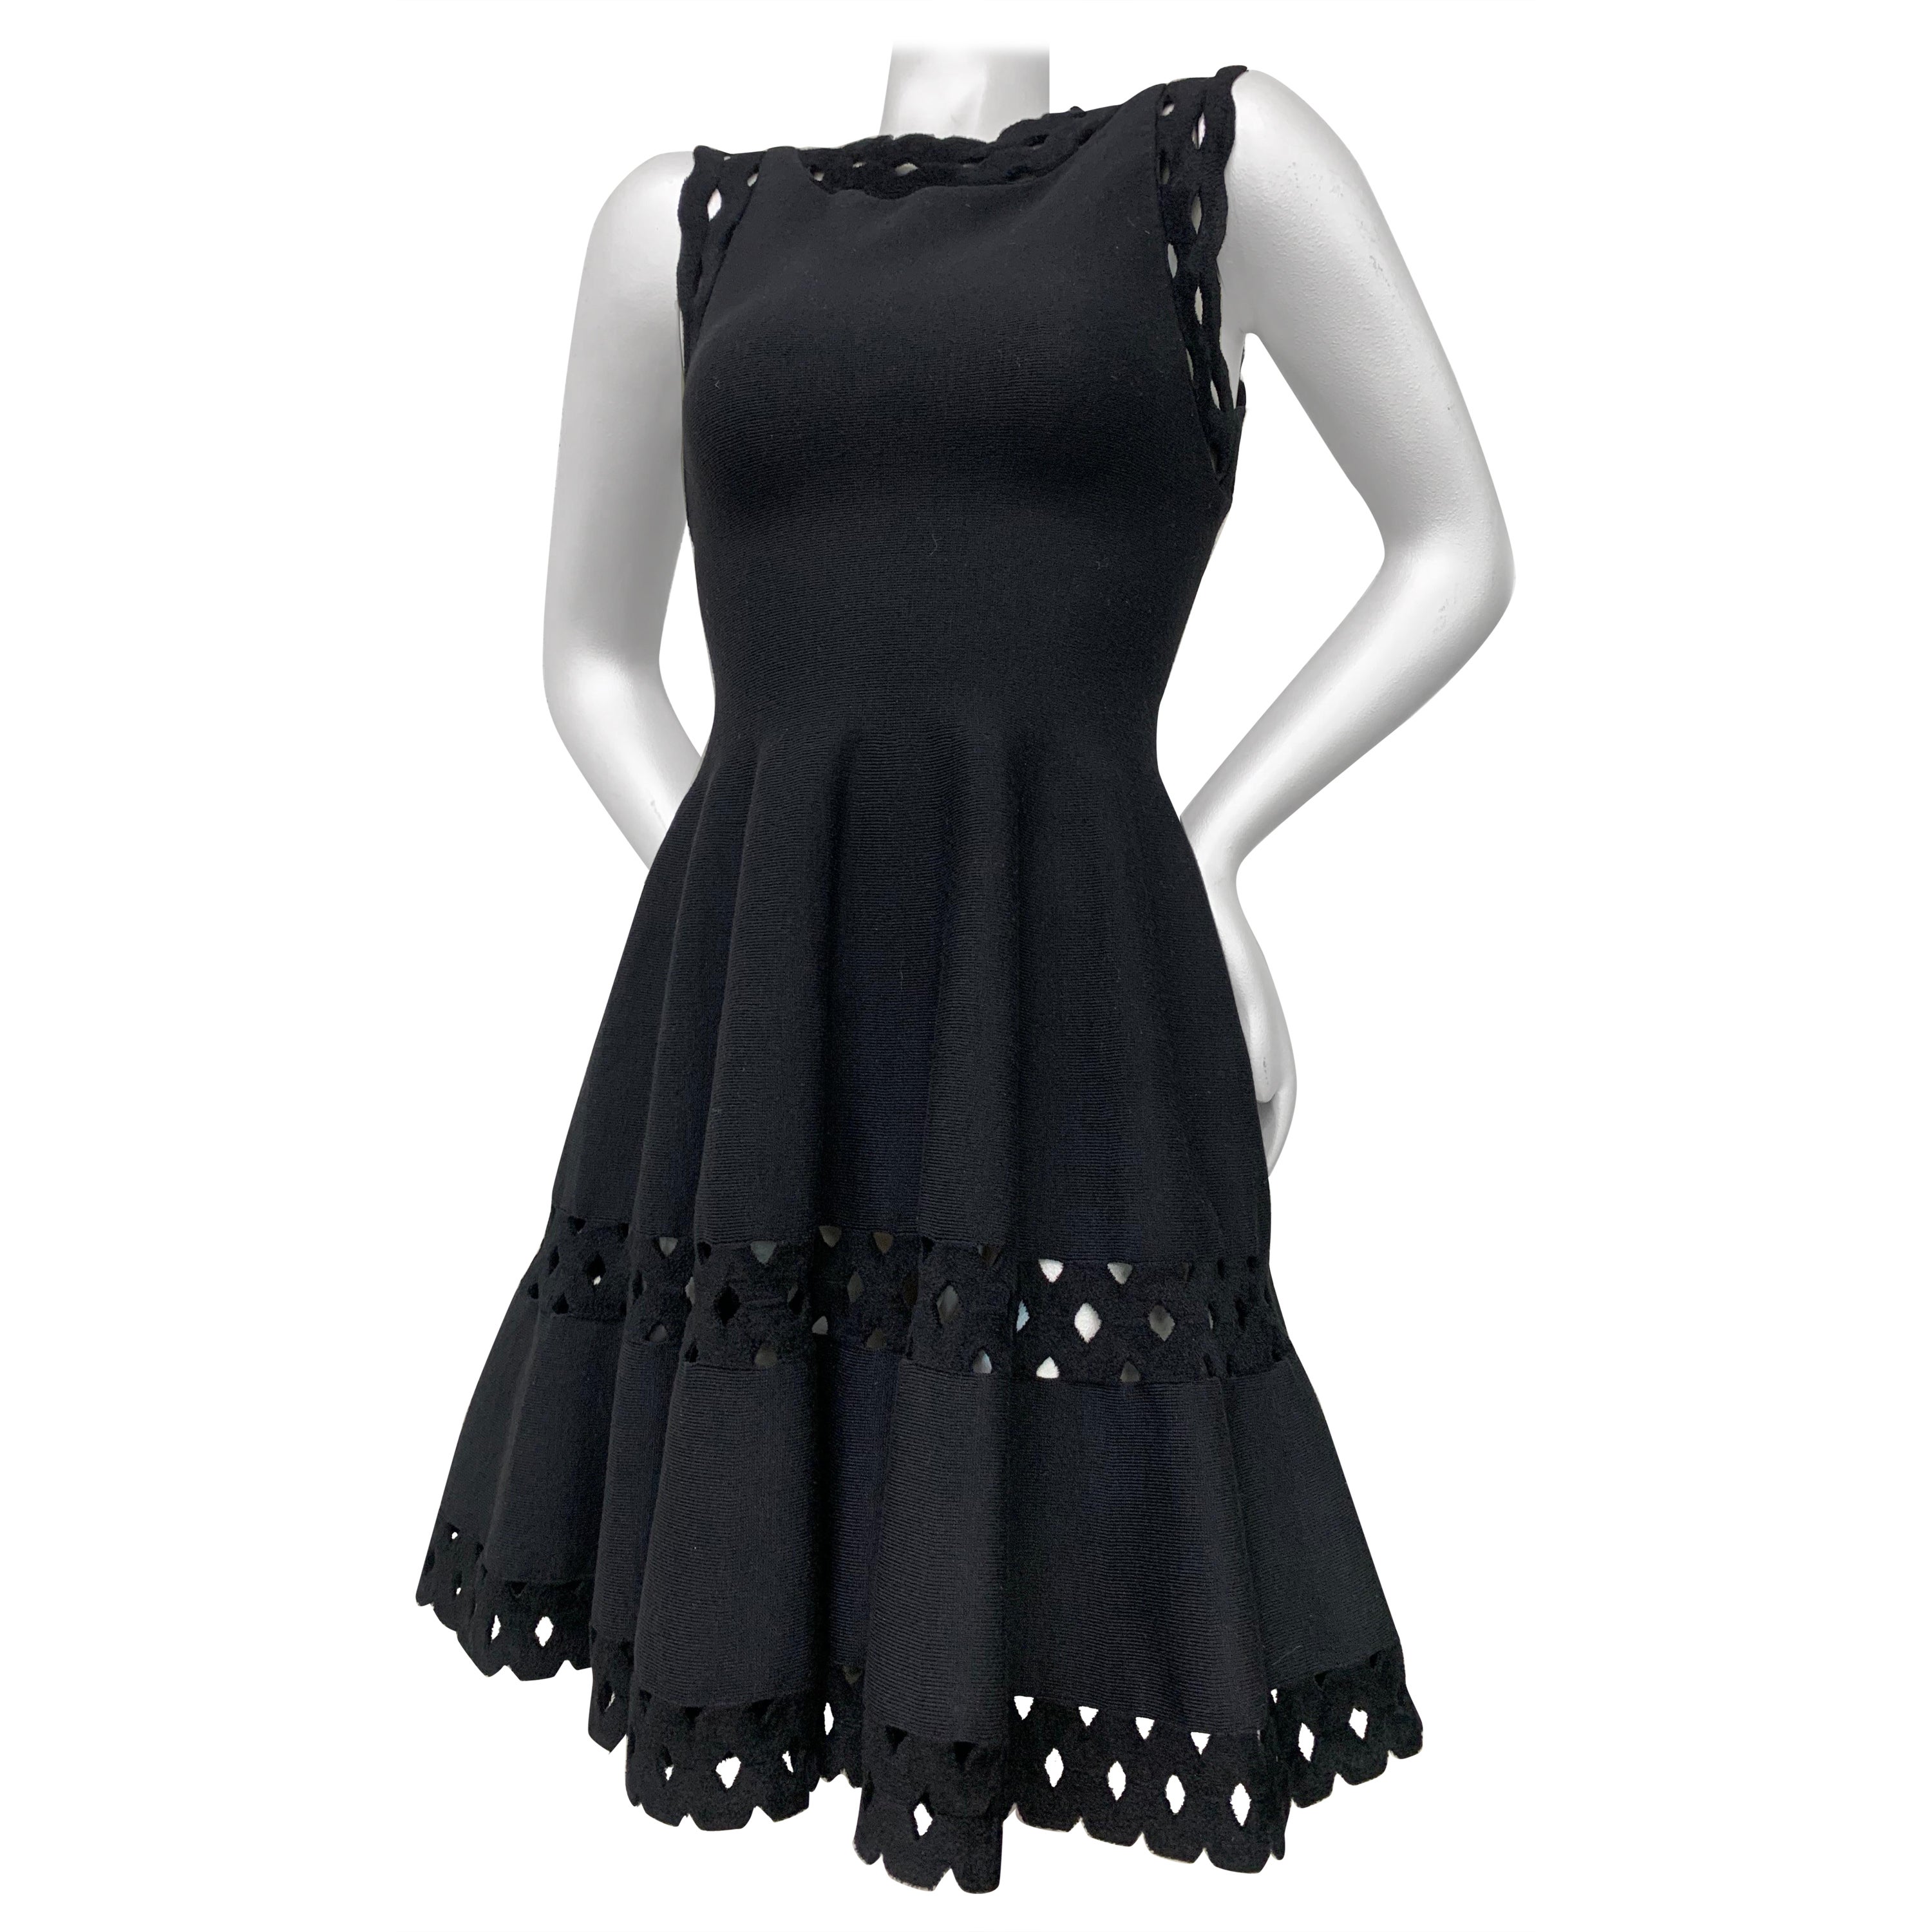 Alaia Black 1950s-Inspired Little Black Dress w Full Skirt Eyelet Hem & Inserts For Sale